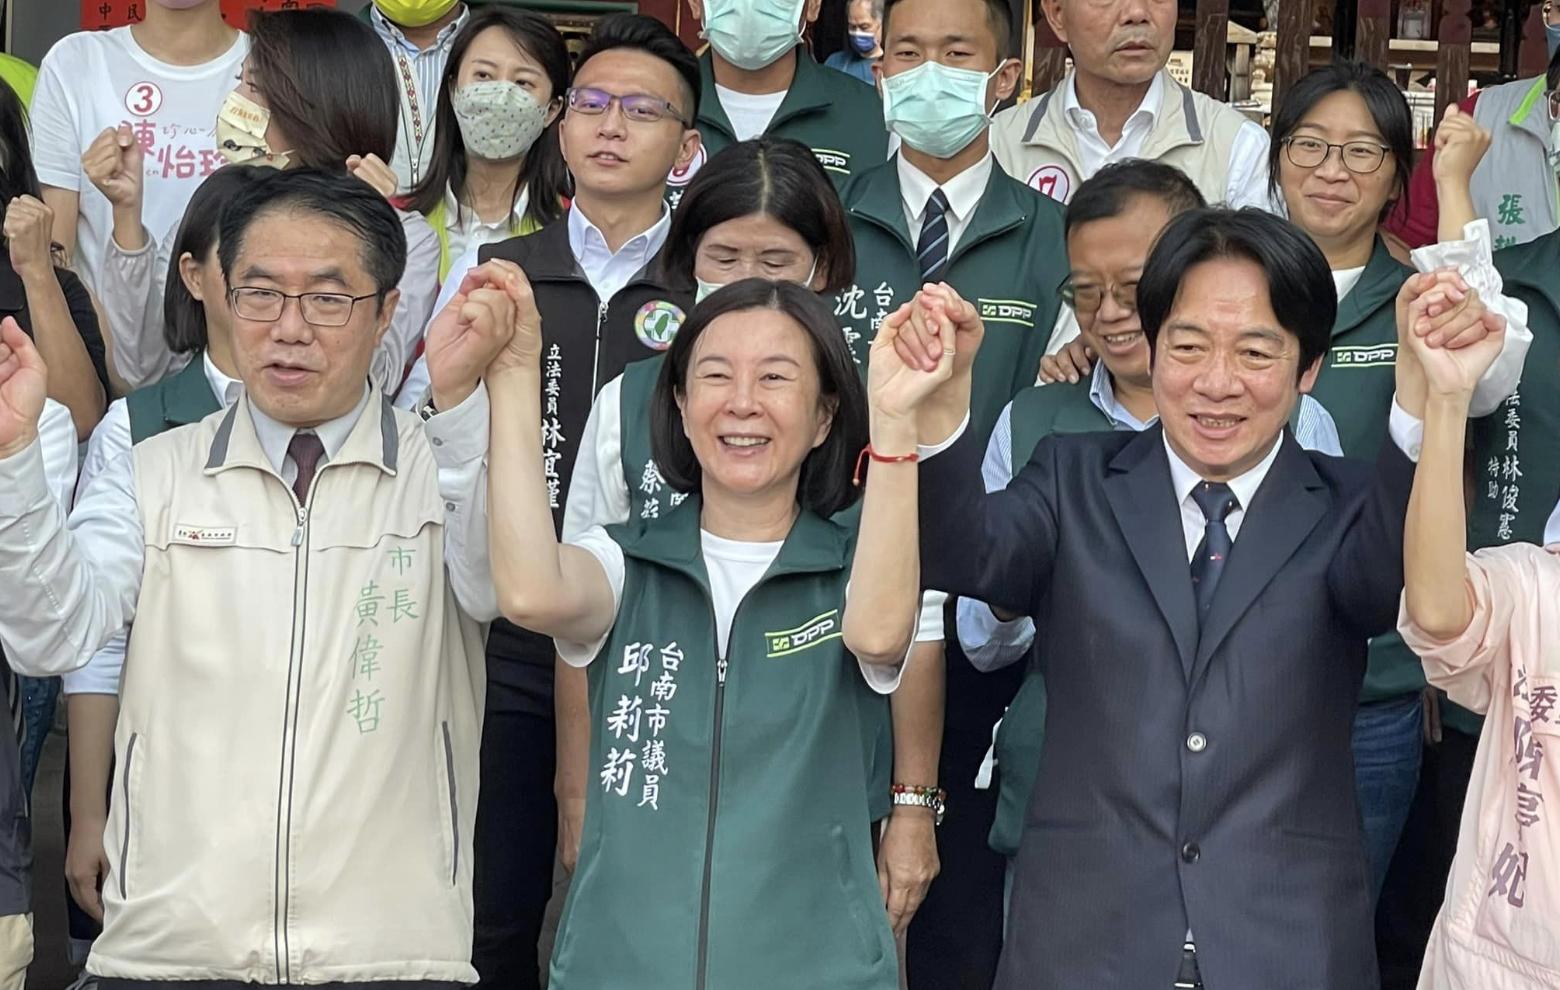 台南市議長選舉結果出爐 民進黨邱莉莉以36比21勝郭信良